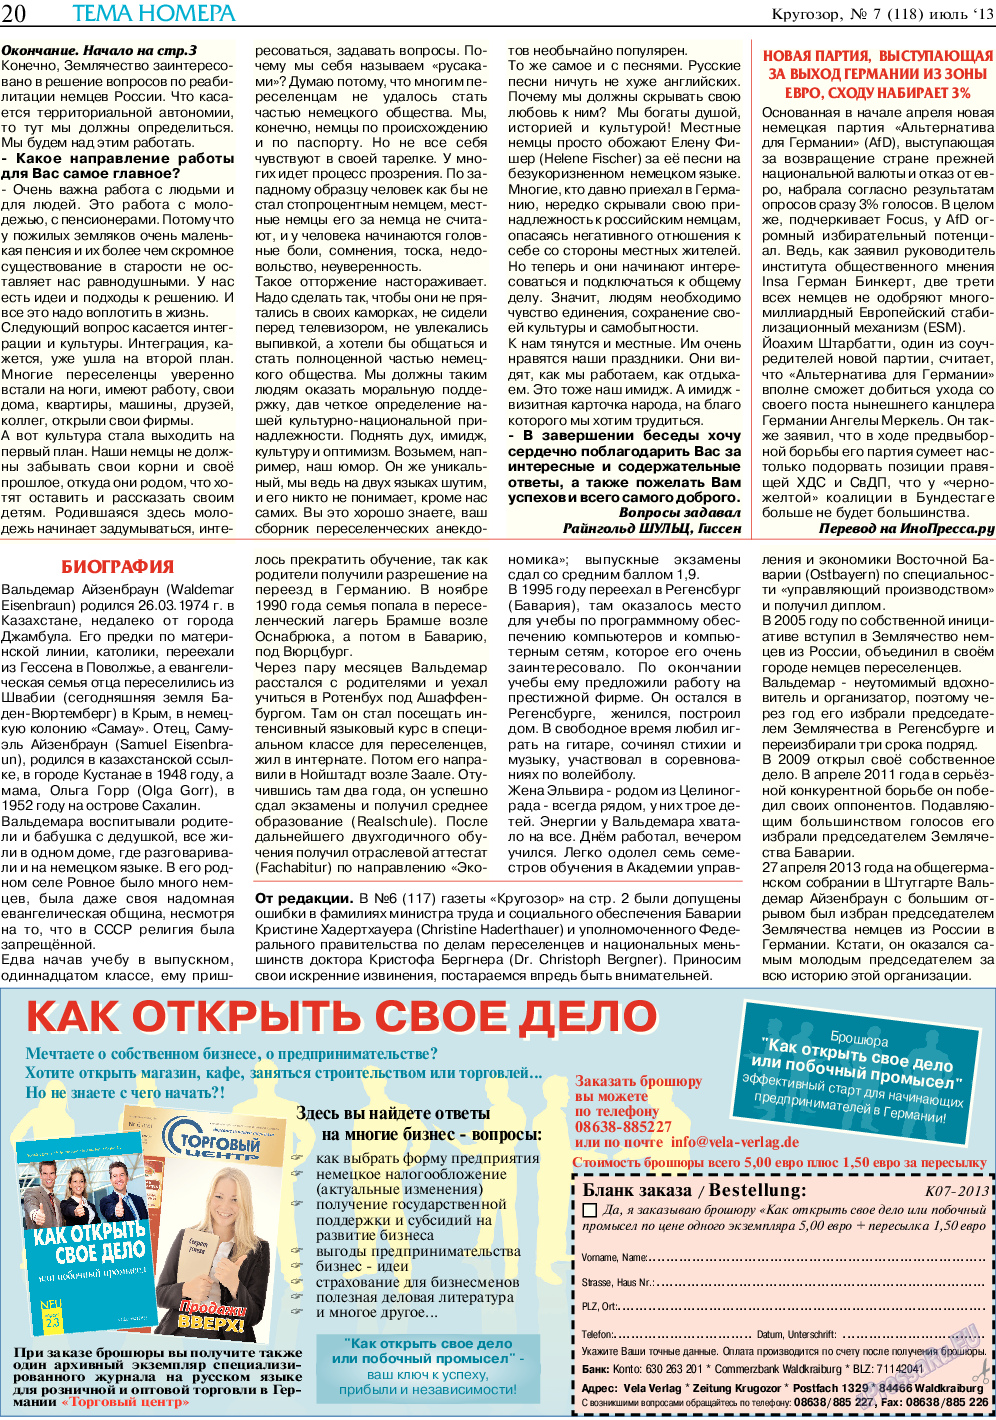 Кругозор (газета). 2013 год, номер 7, стр. 20